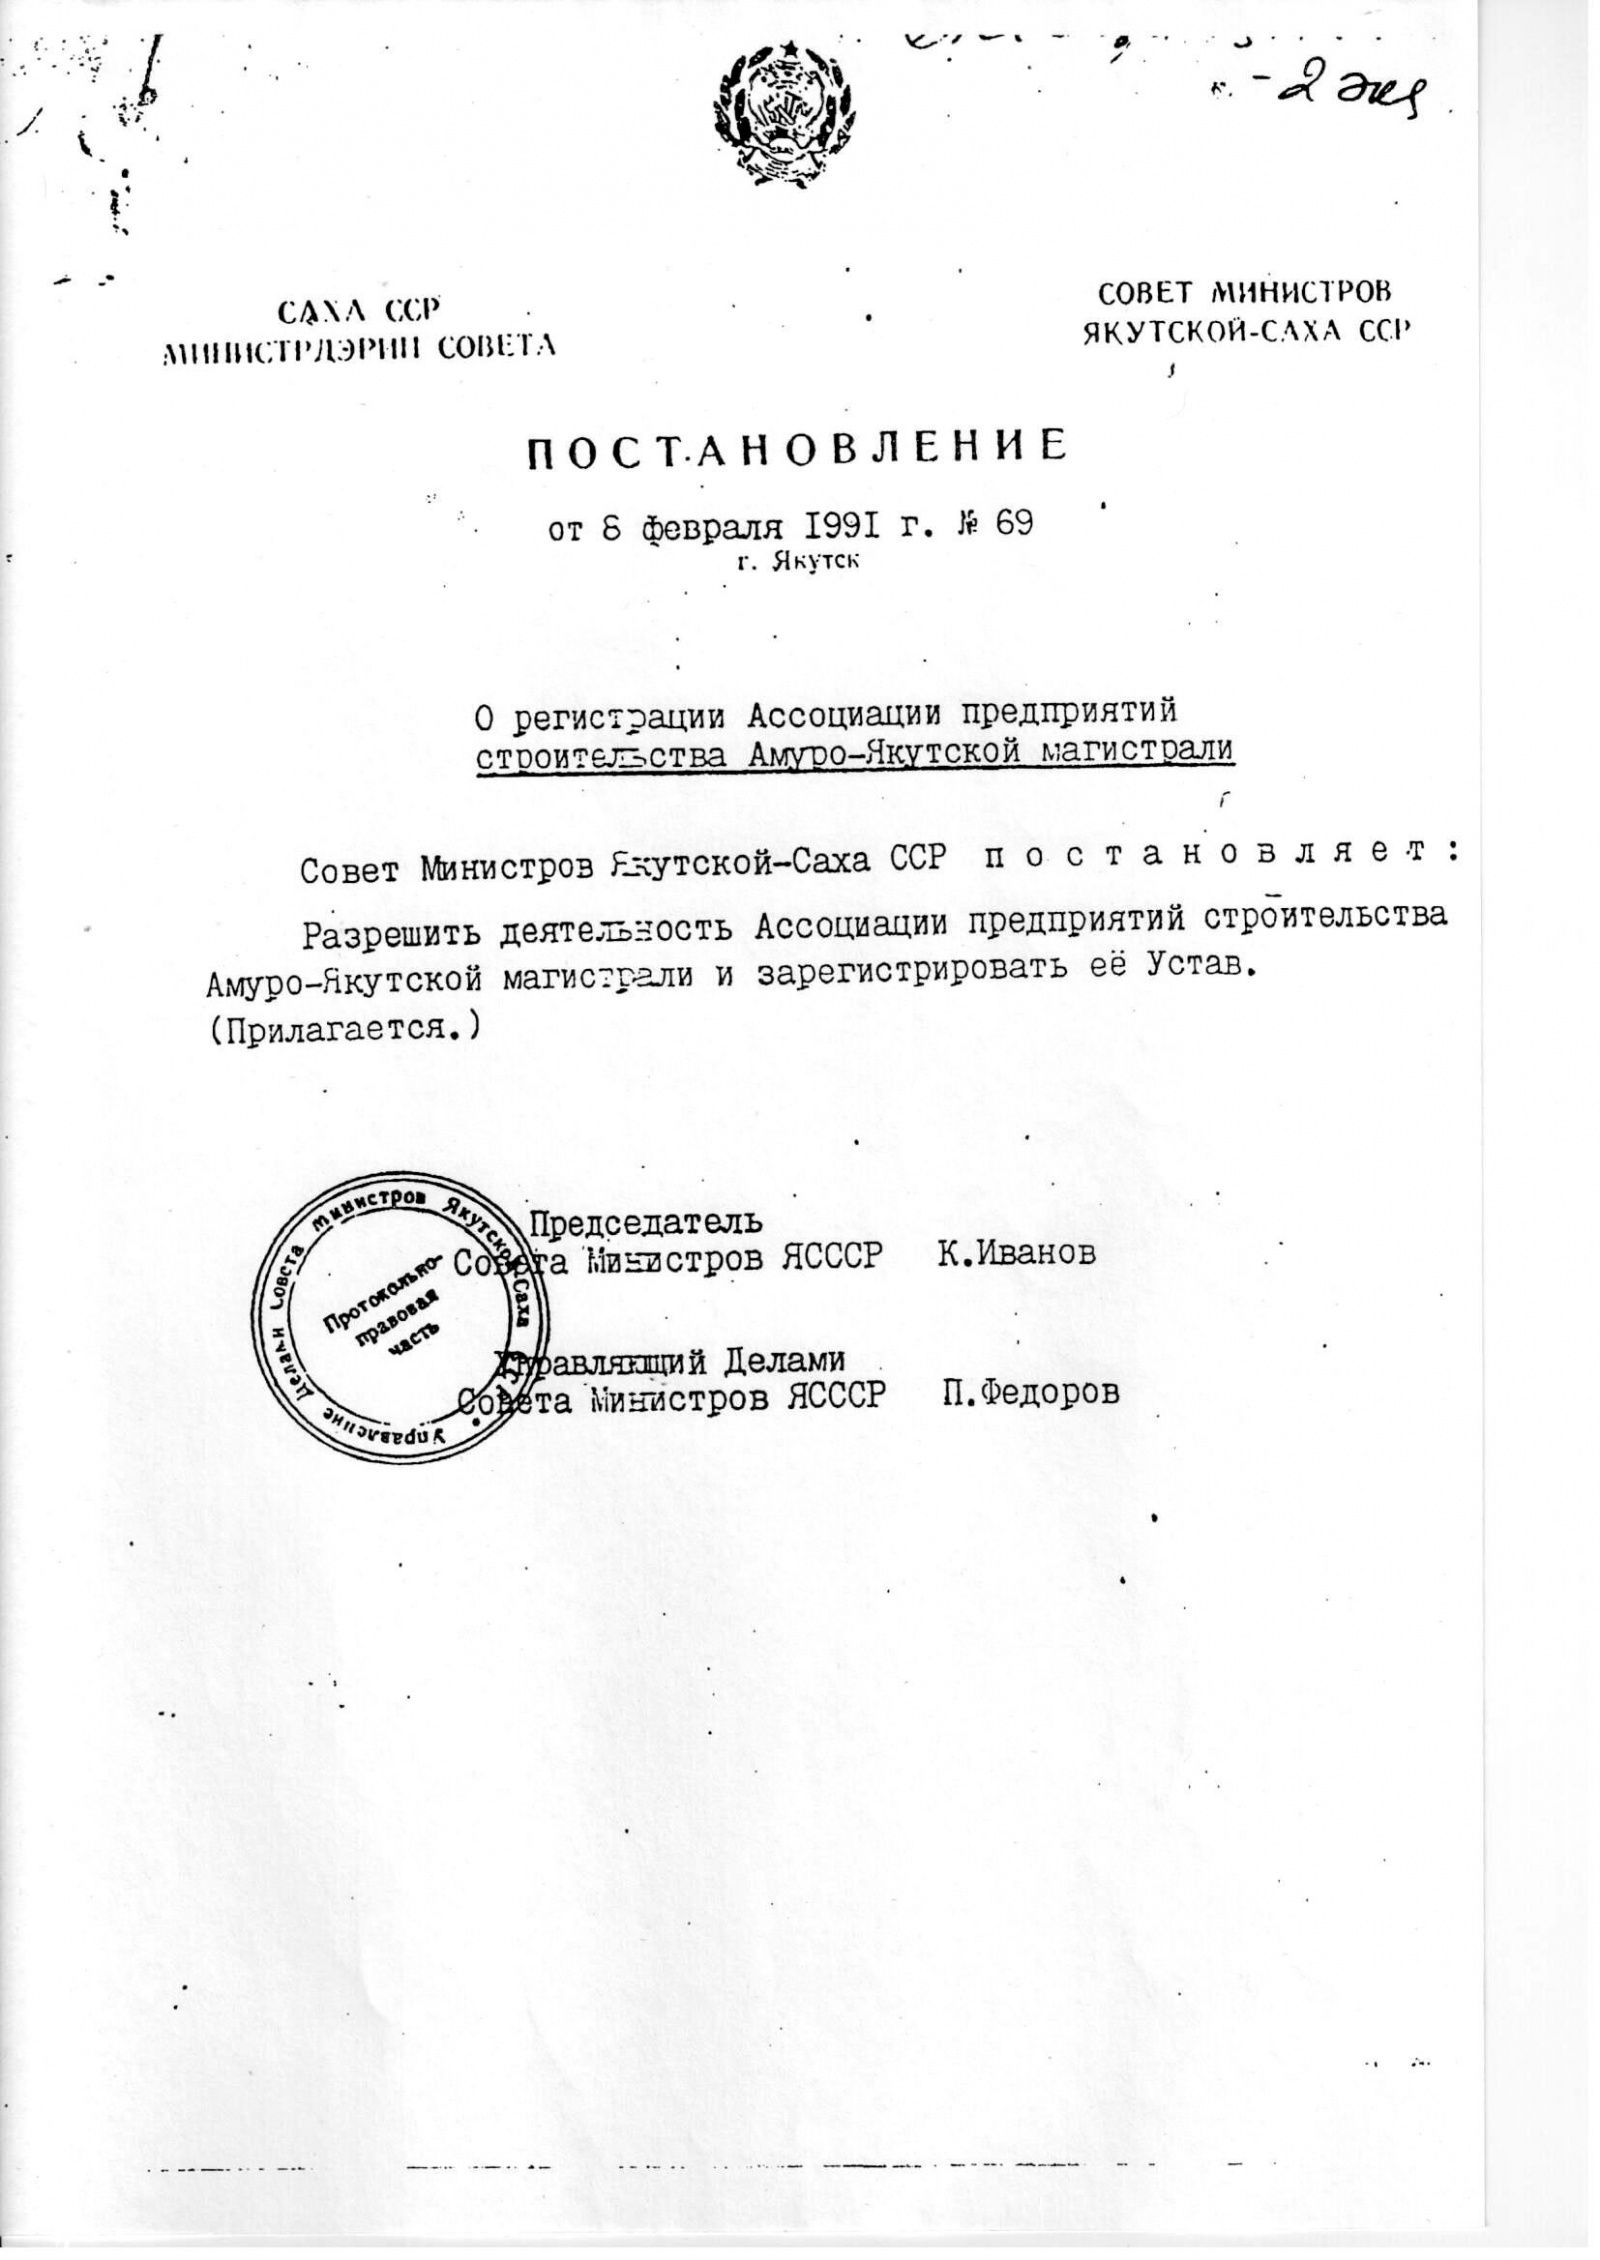 Постановление о регистрации Ассоциации предприятий строительства Амуро-Якутской магистрали